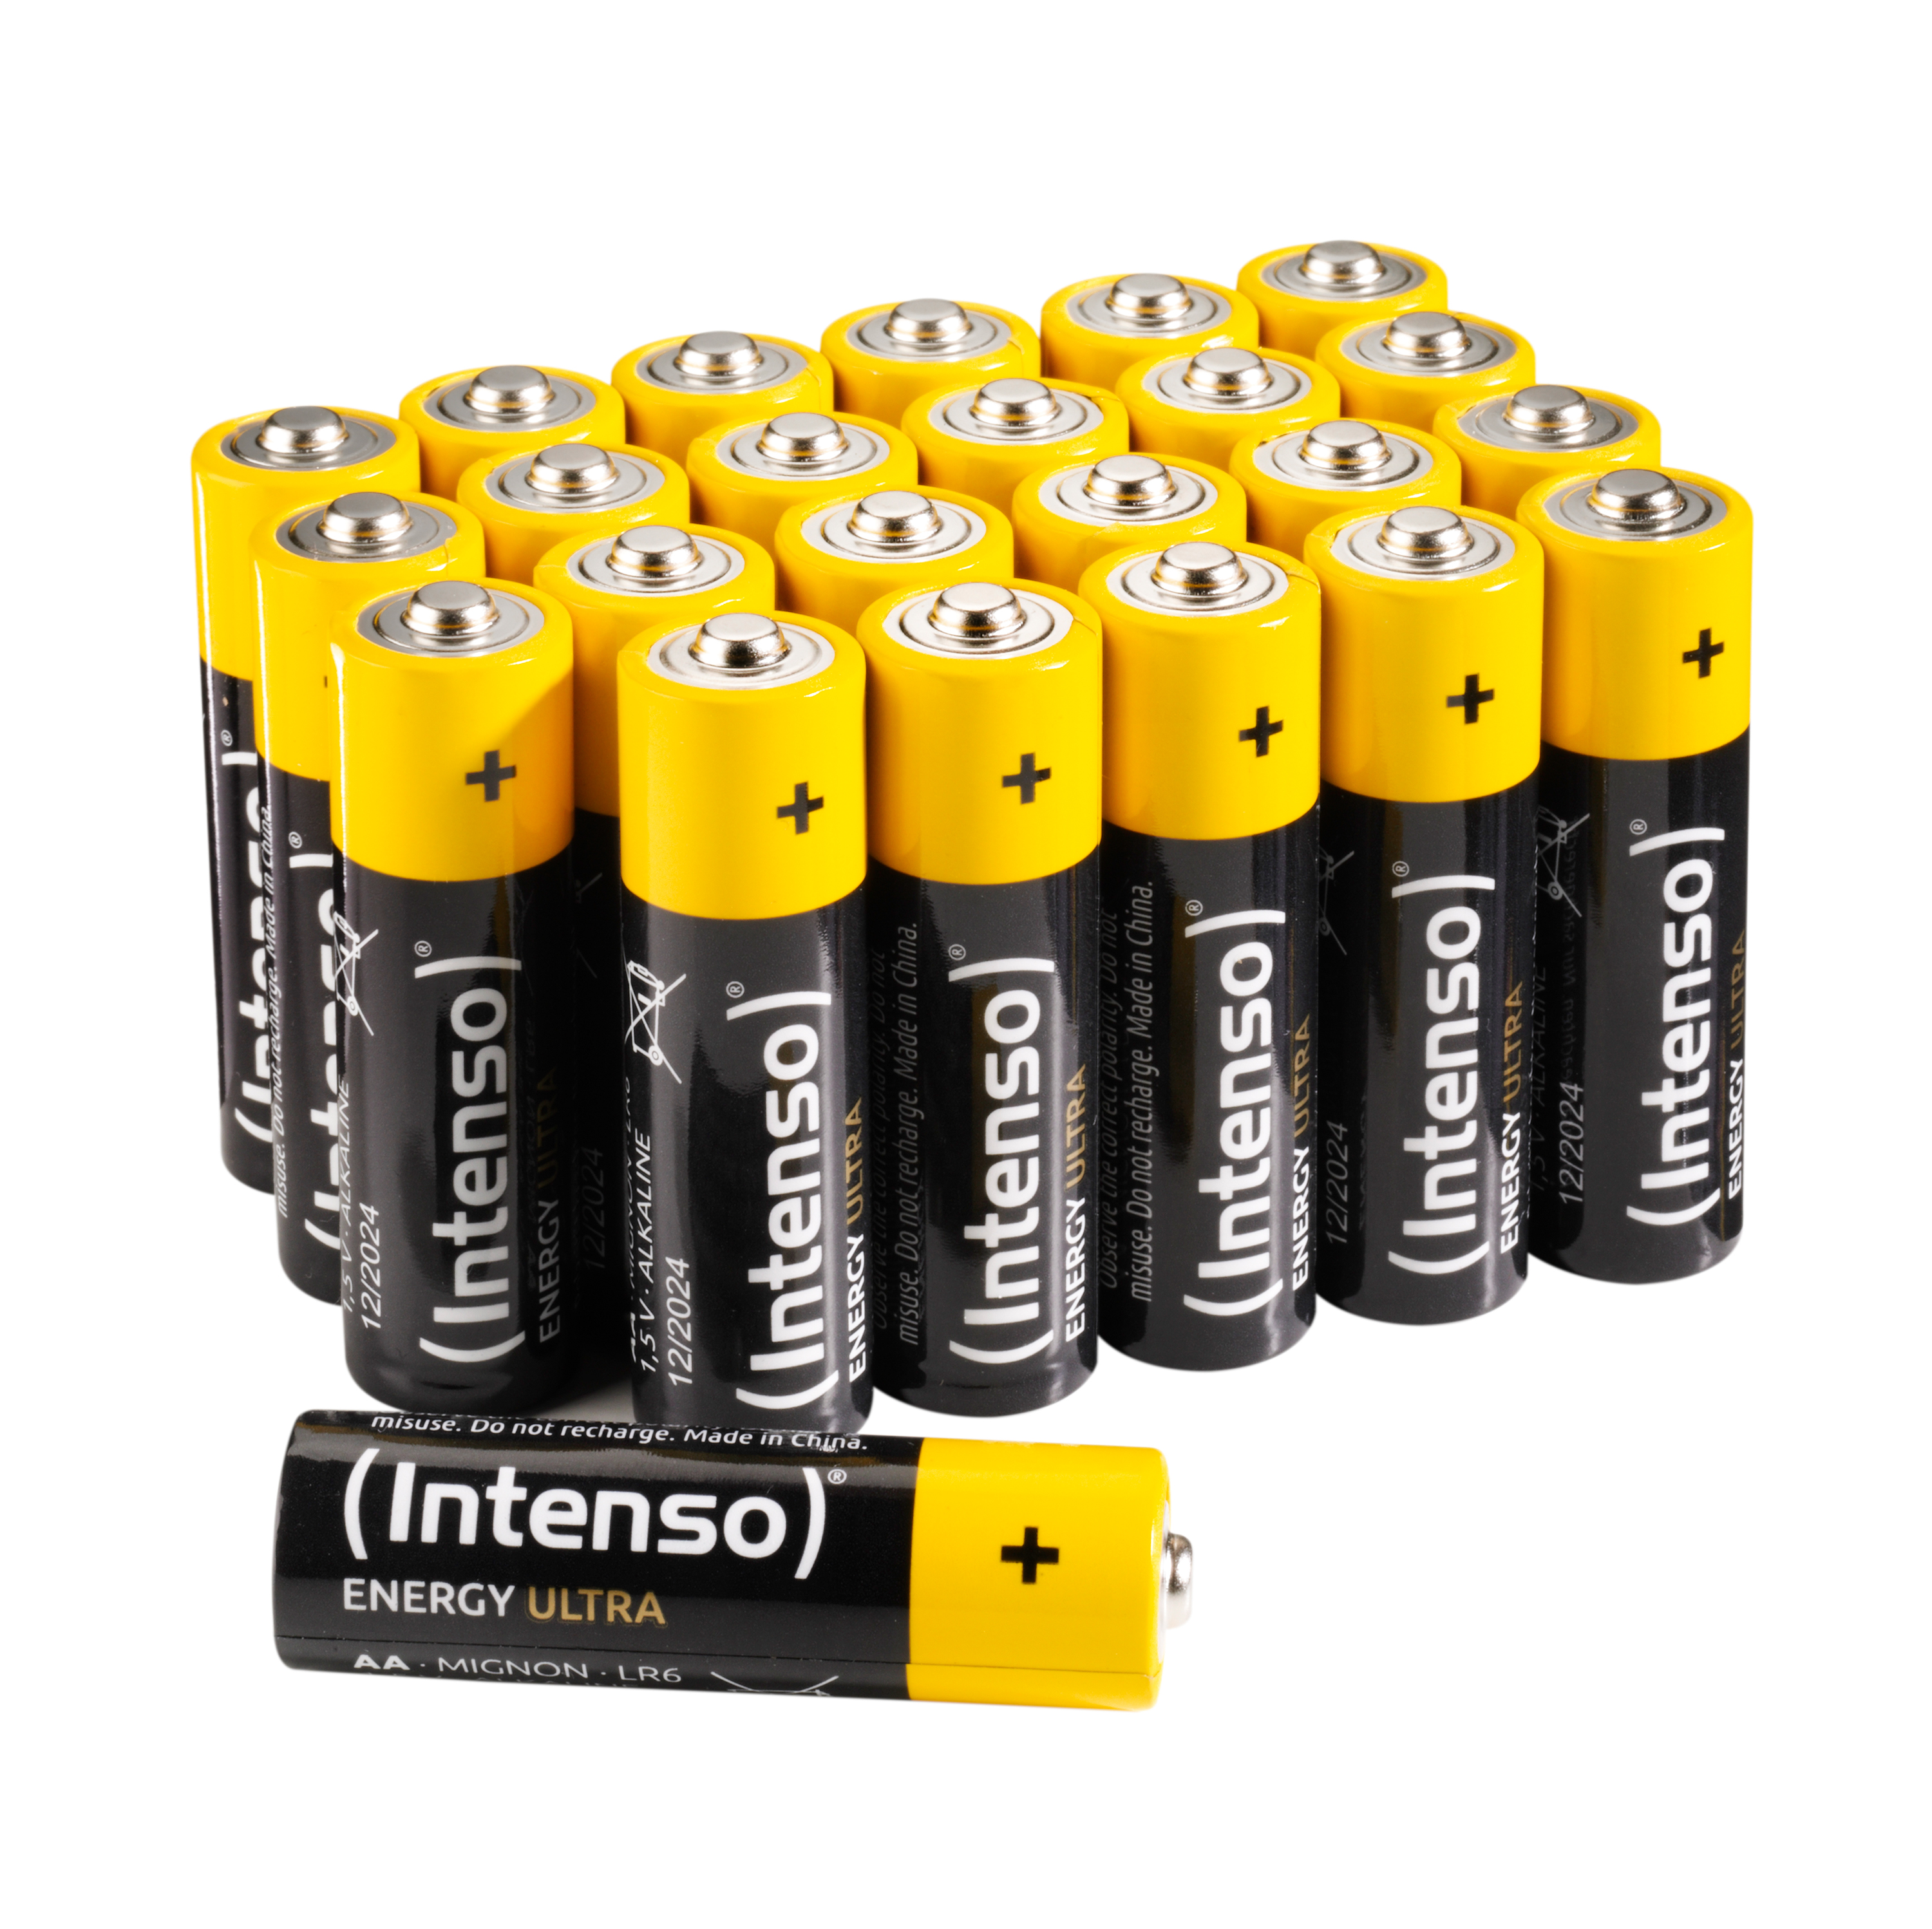 INTENSO Energy Ultra Alkaline Pack Manganese LR6 (Quecksilberfrei), Batterie Mignon 24er AA, LR6, AA